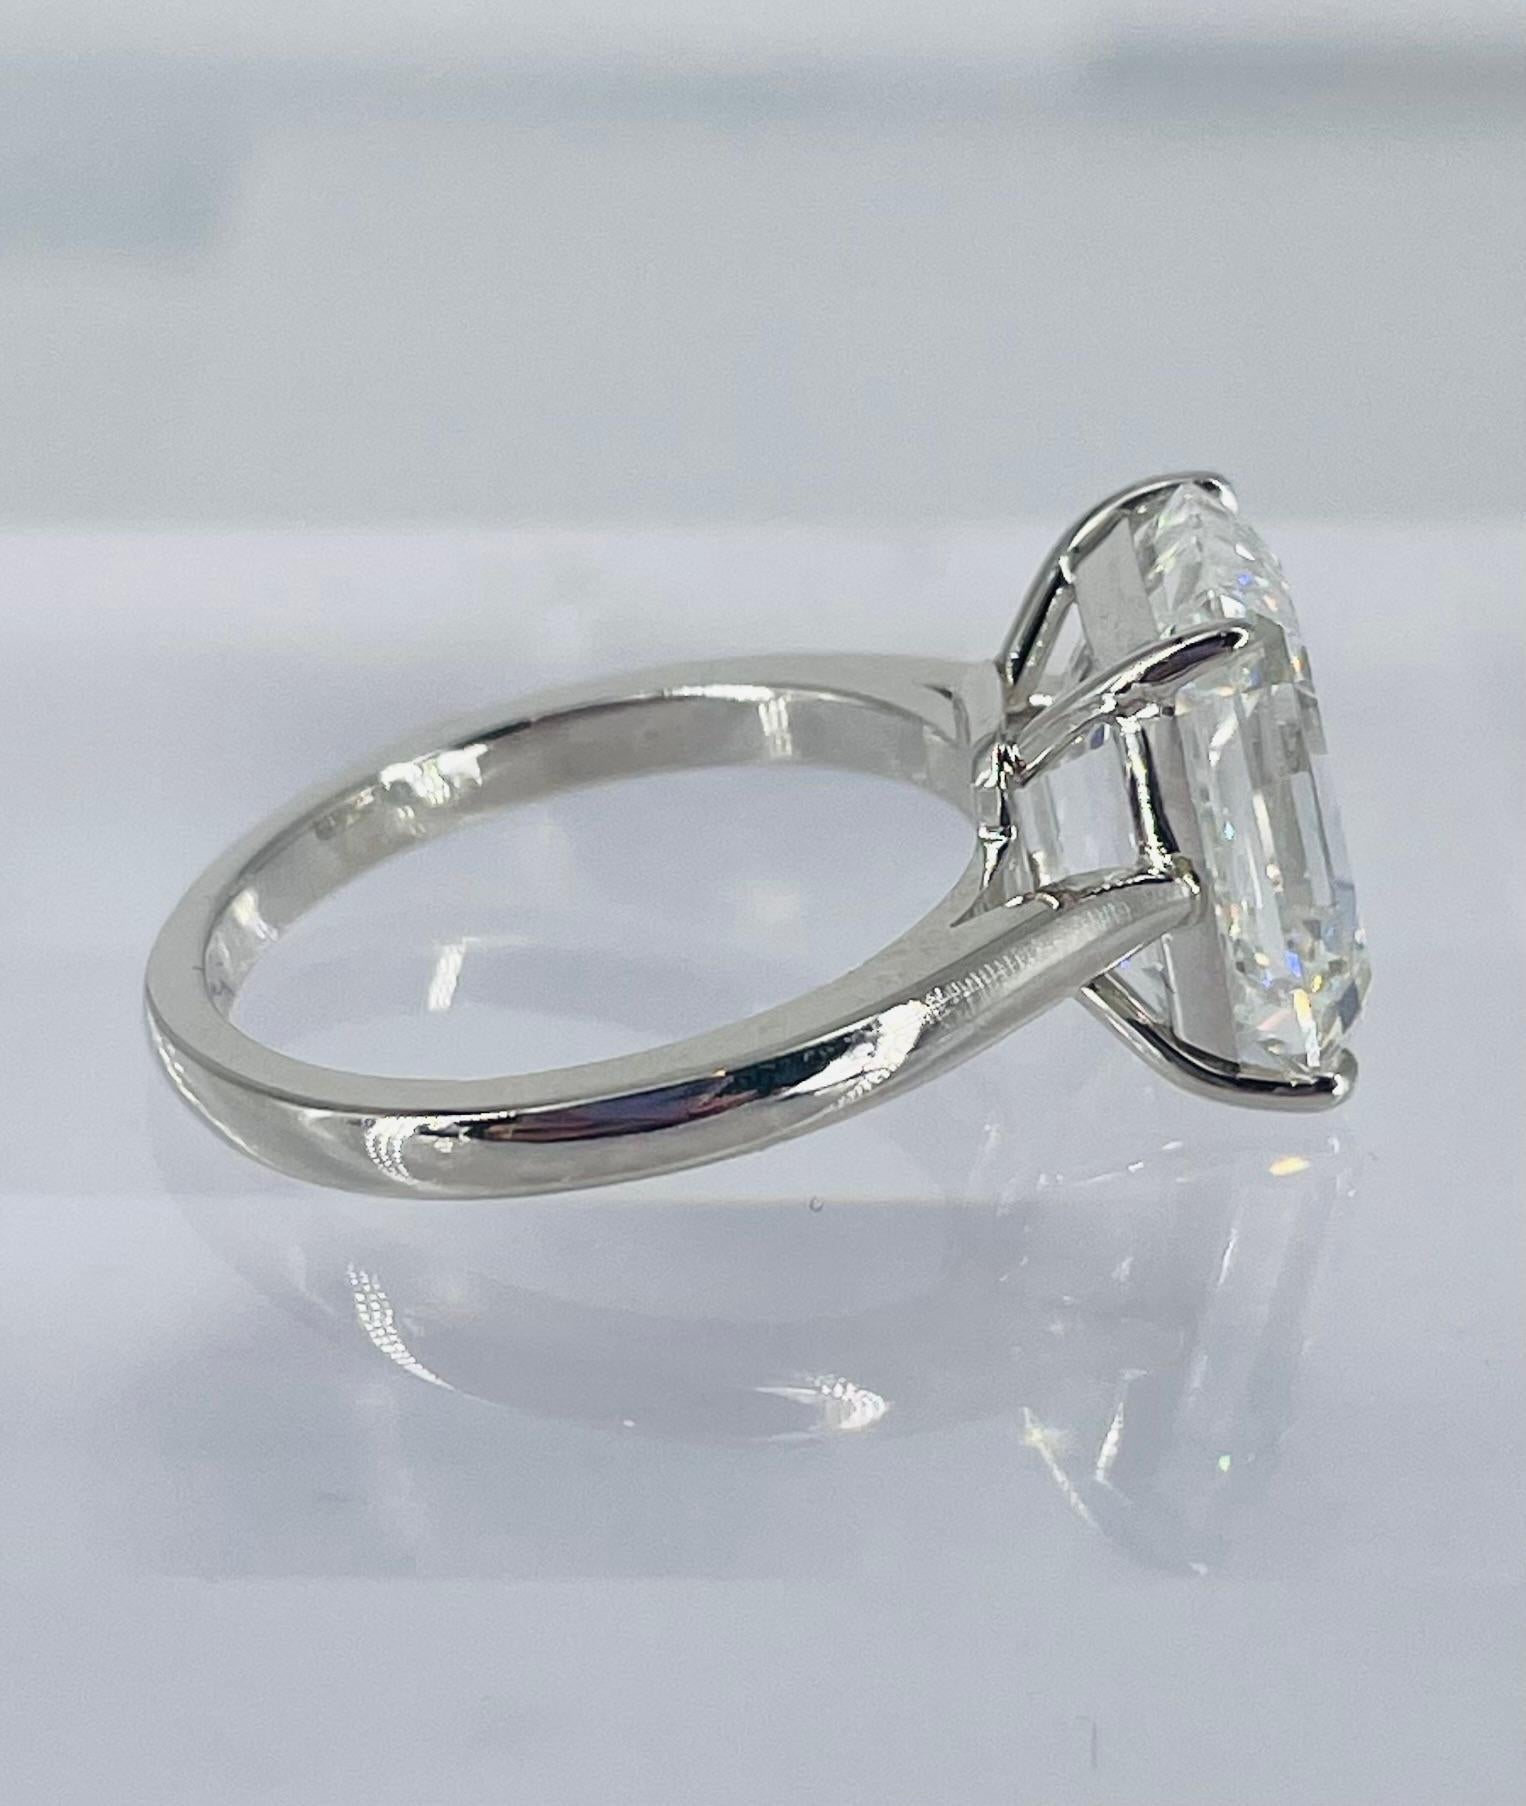 Dieser klassische Solitär-Verlobungsring von J. Birnbach ist mit einem spektakulären 5,71-Karat-Diamanten im Smaragdschliff besetzt. Der Diamant ist von GIA zertifiziert und hat die Farbe G und die Reinheit VVS2. Smaragdgeschliffene Diamanten können